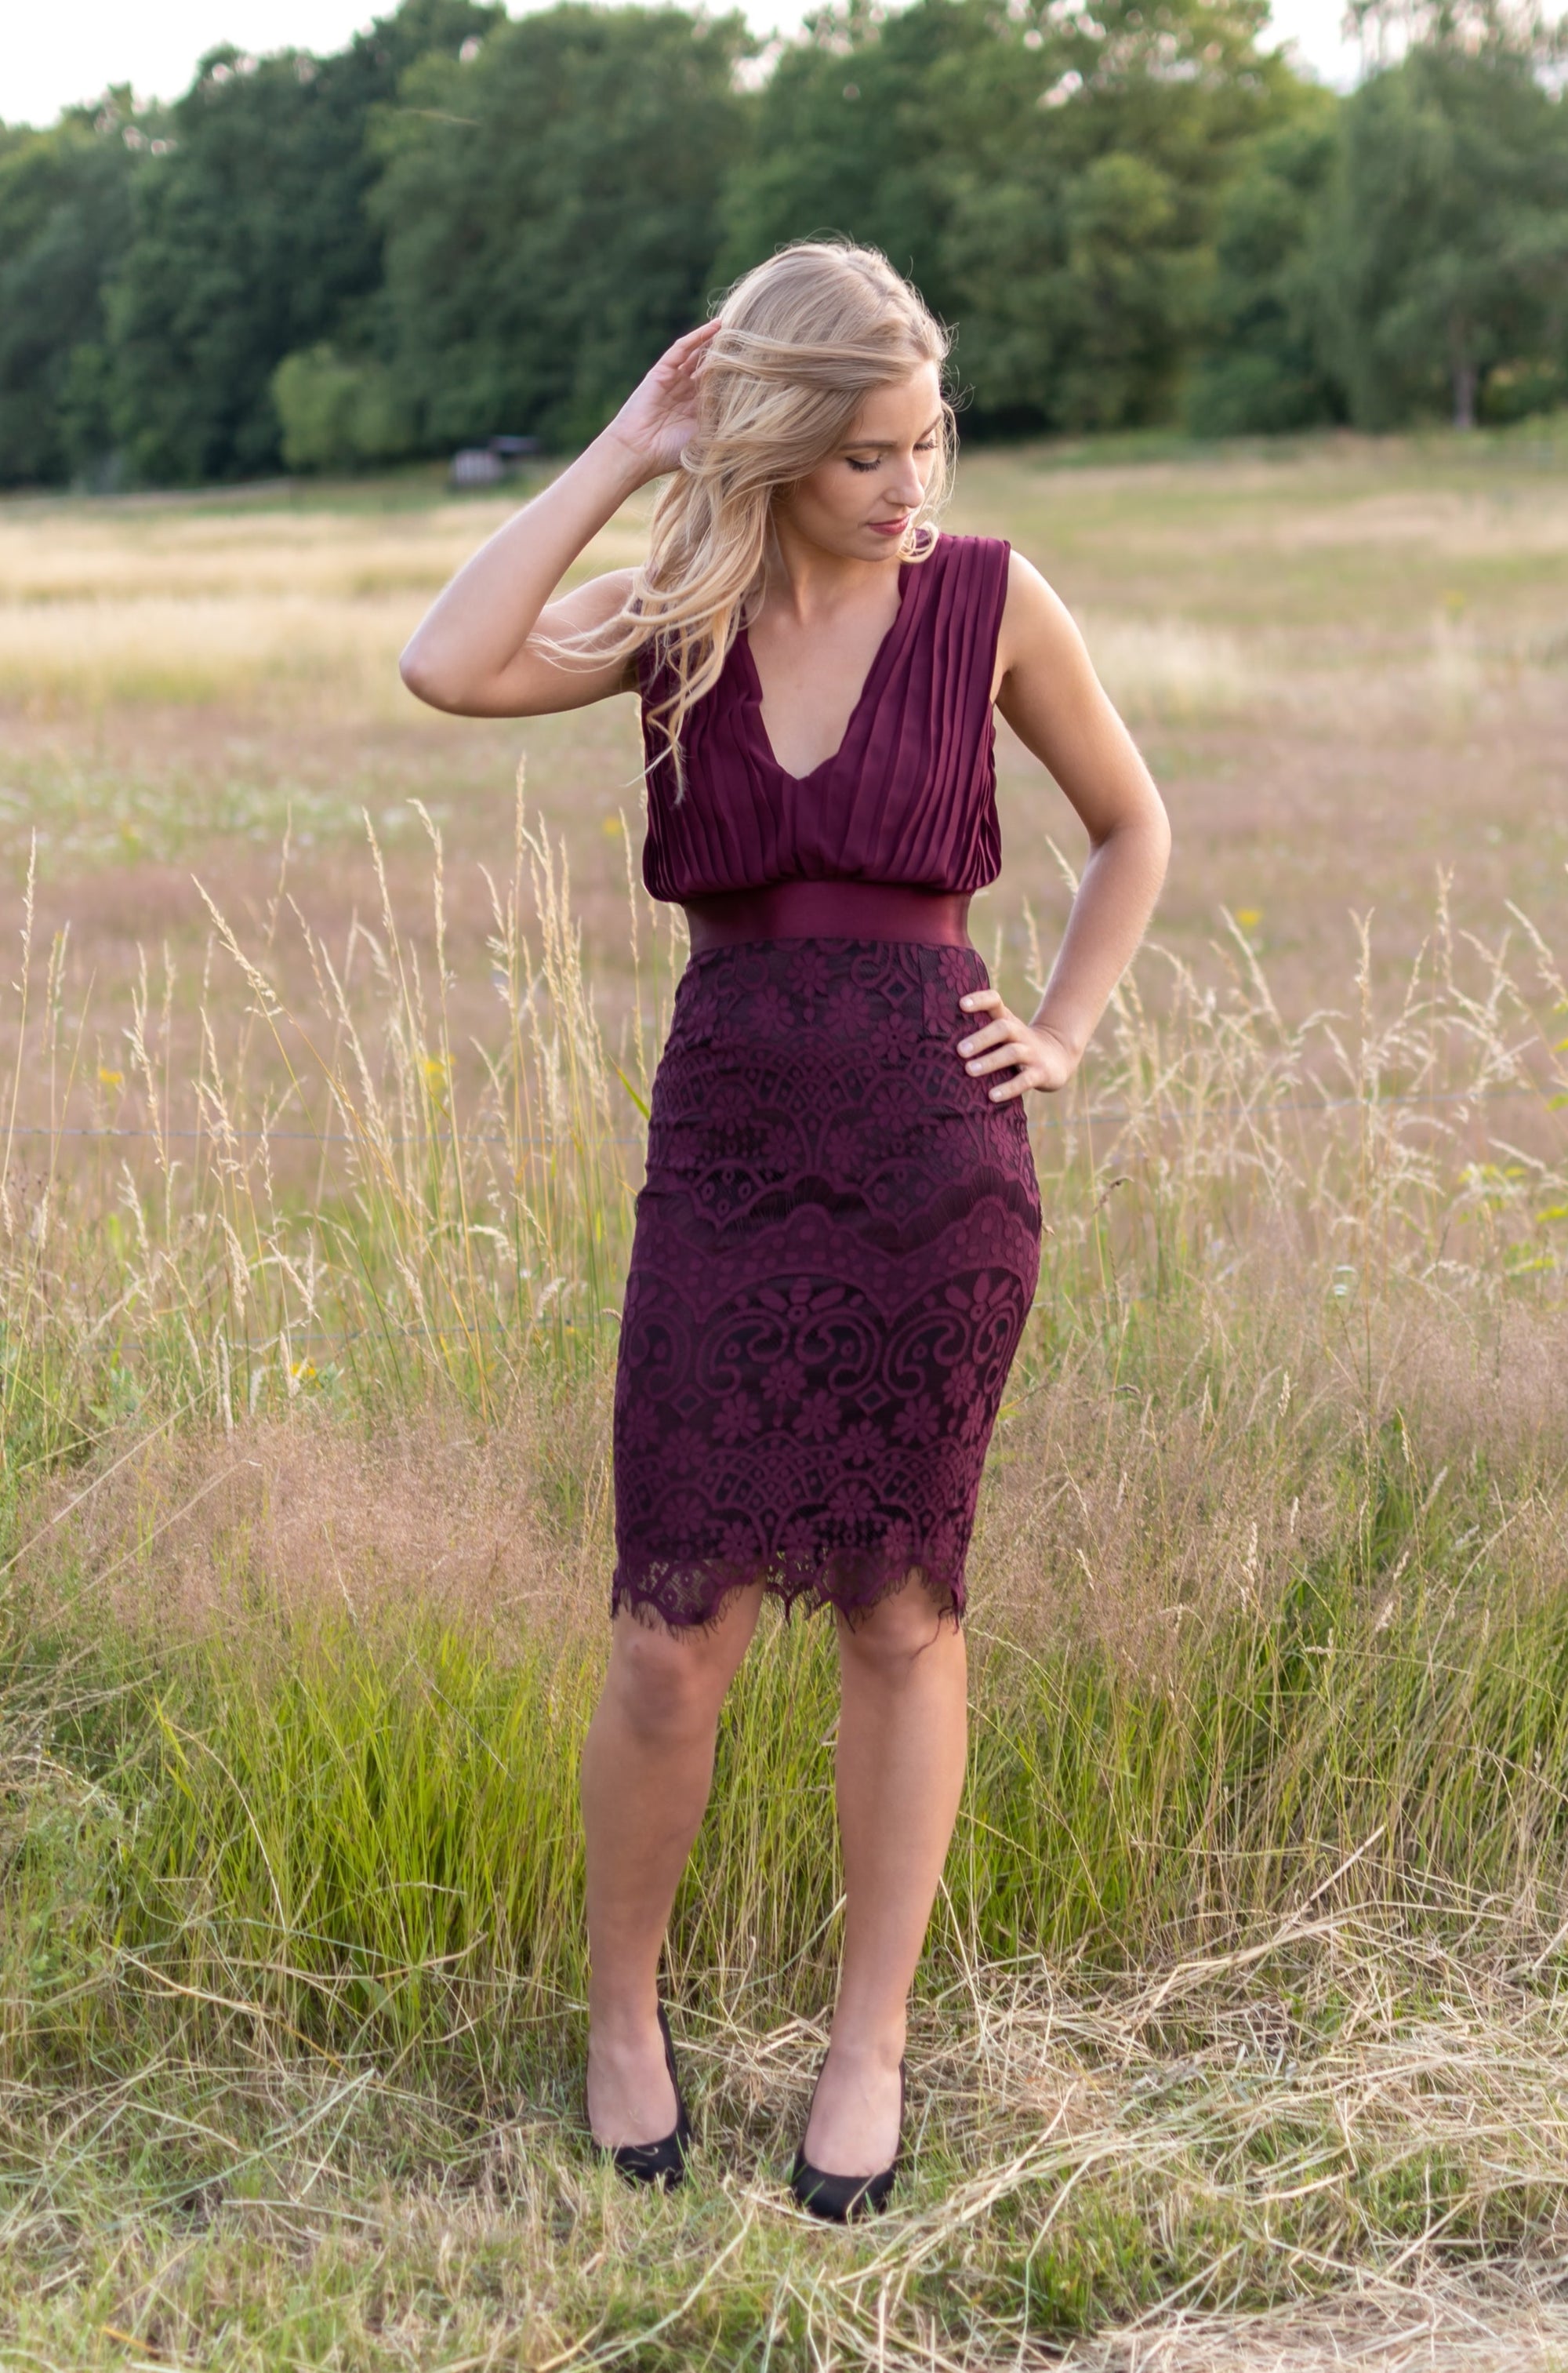 The Perfect Little Lace Dress - Bordeaux (alleen online te koop, niet in de winkel)